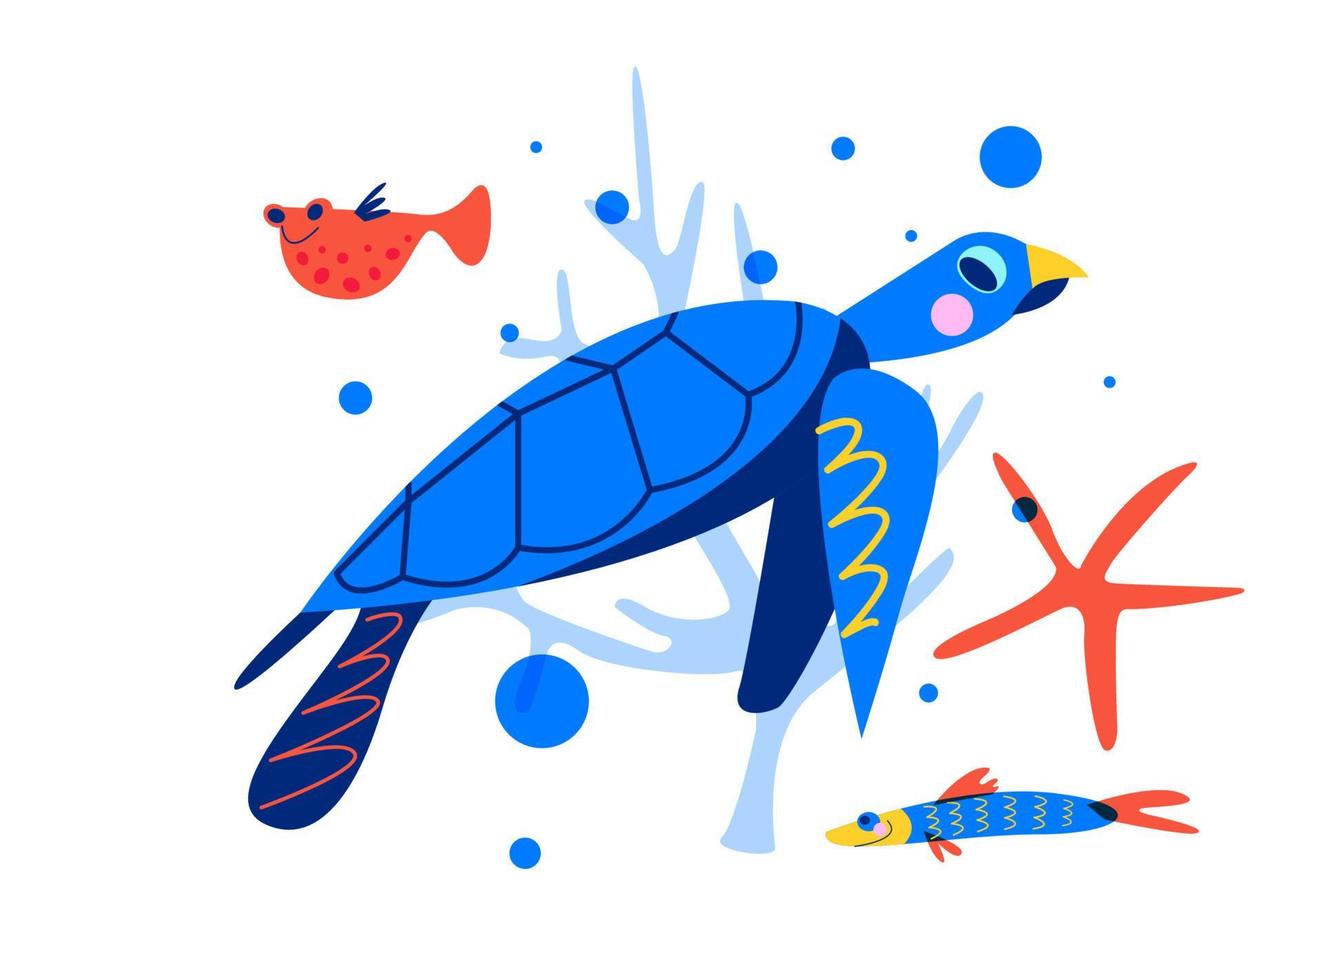 tartaruga di mare. vita marina, mondo sottomarino, pesci d'acquario. illustrazione vettoriale su sfondo bianco.